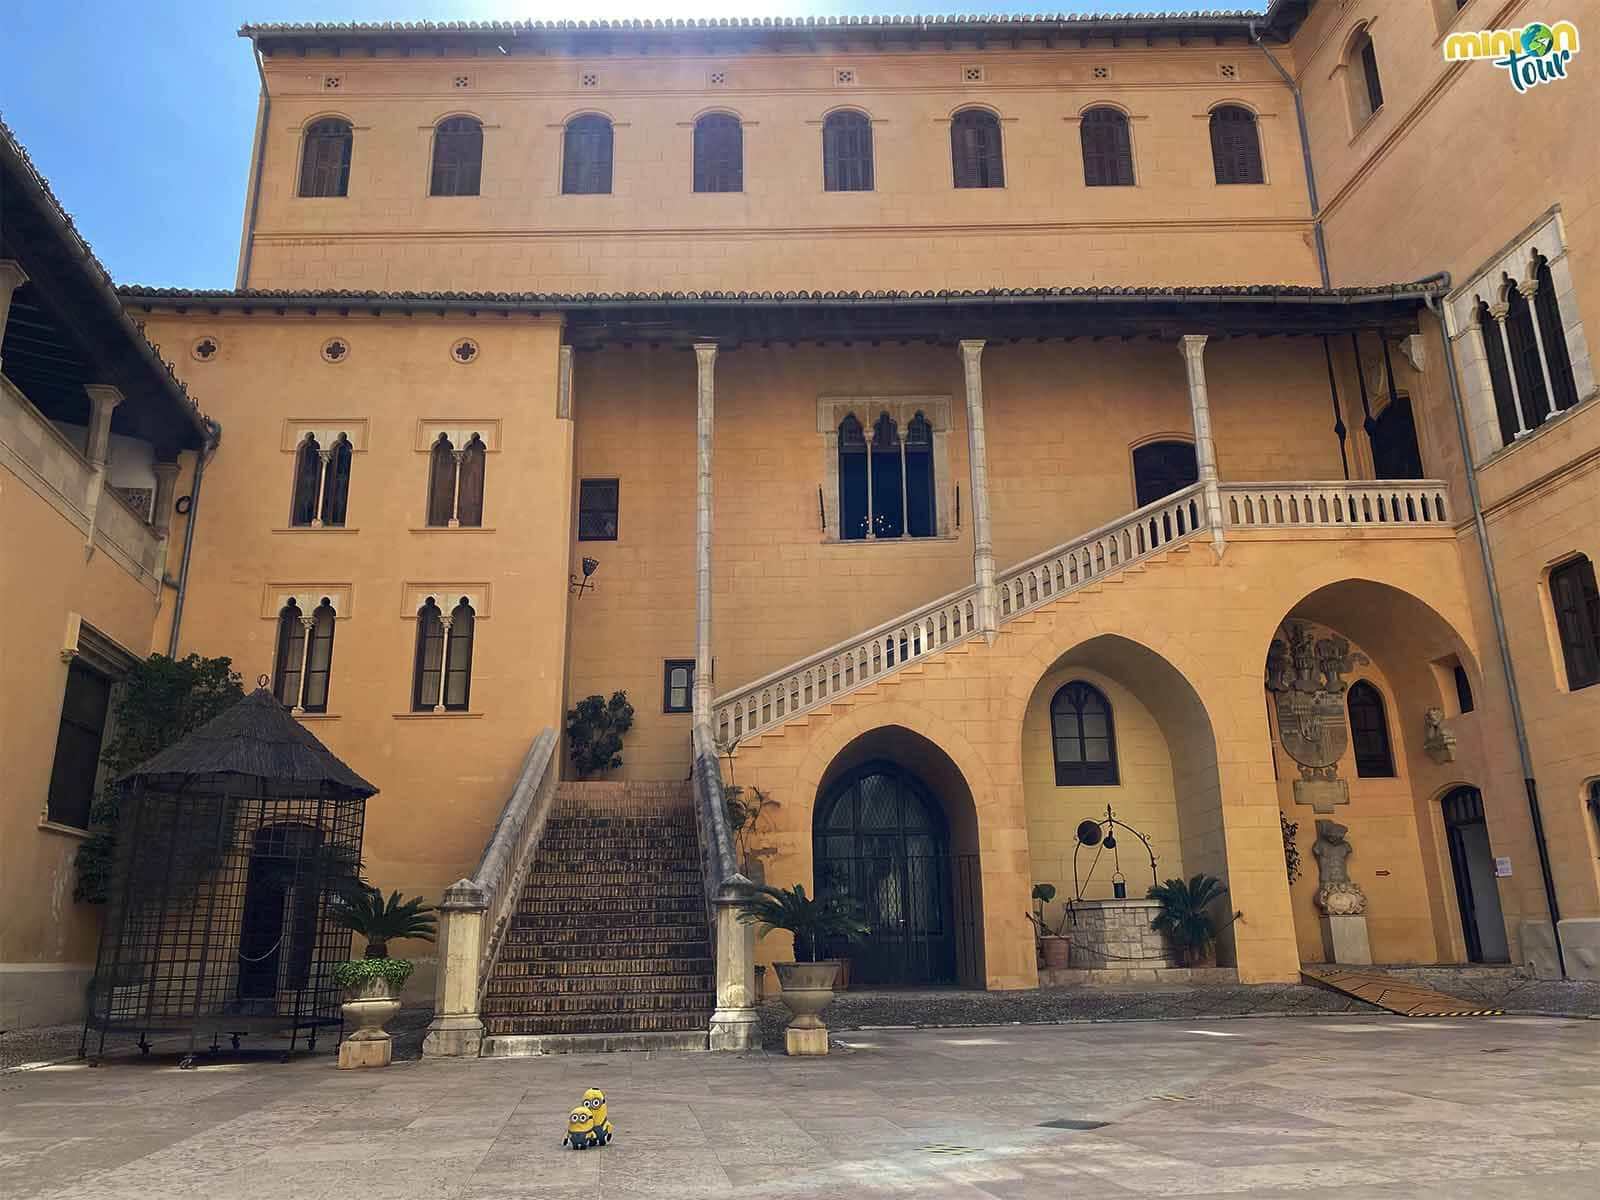 Empezamos nuestra visita al Palacio Ducal de los Borja de Gandia